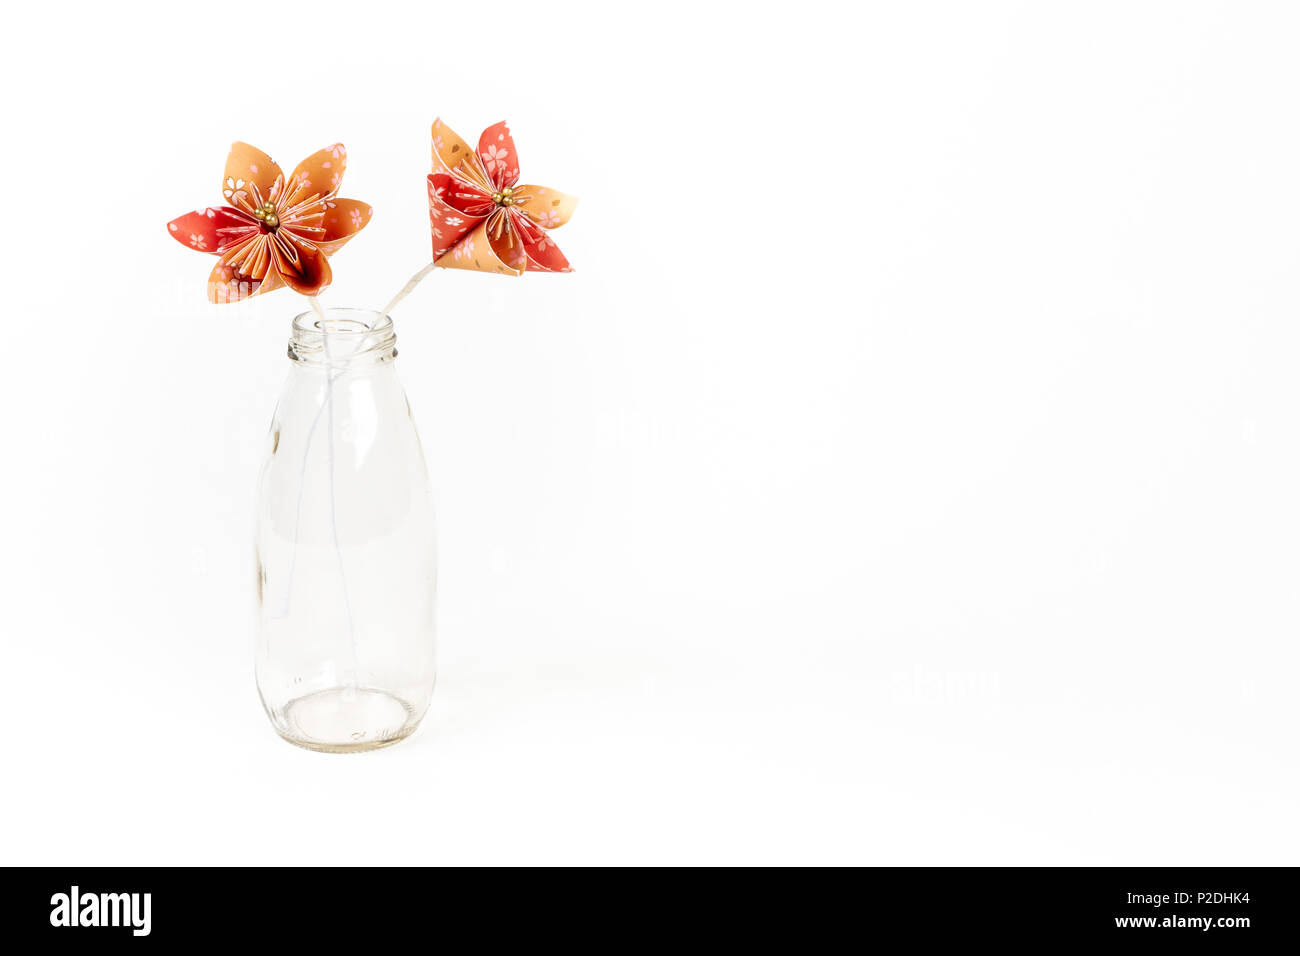 Zwei orange origami Blumen in Glasfläschchen auf weißem Hintergrund. Stockfoto